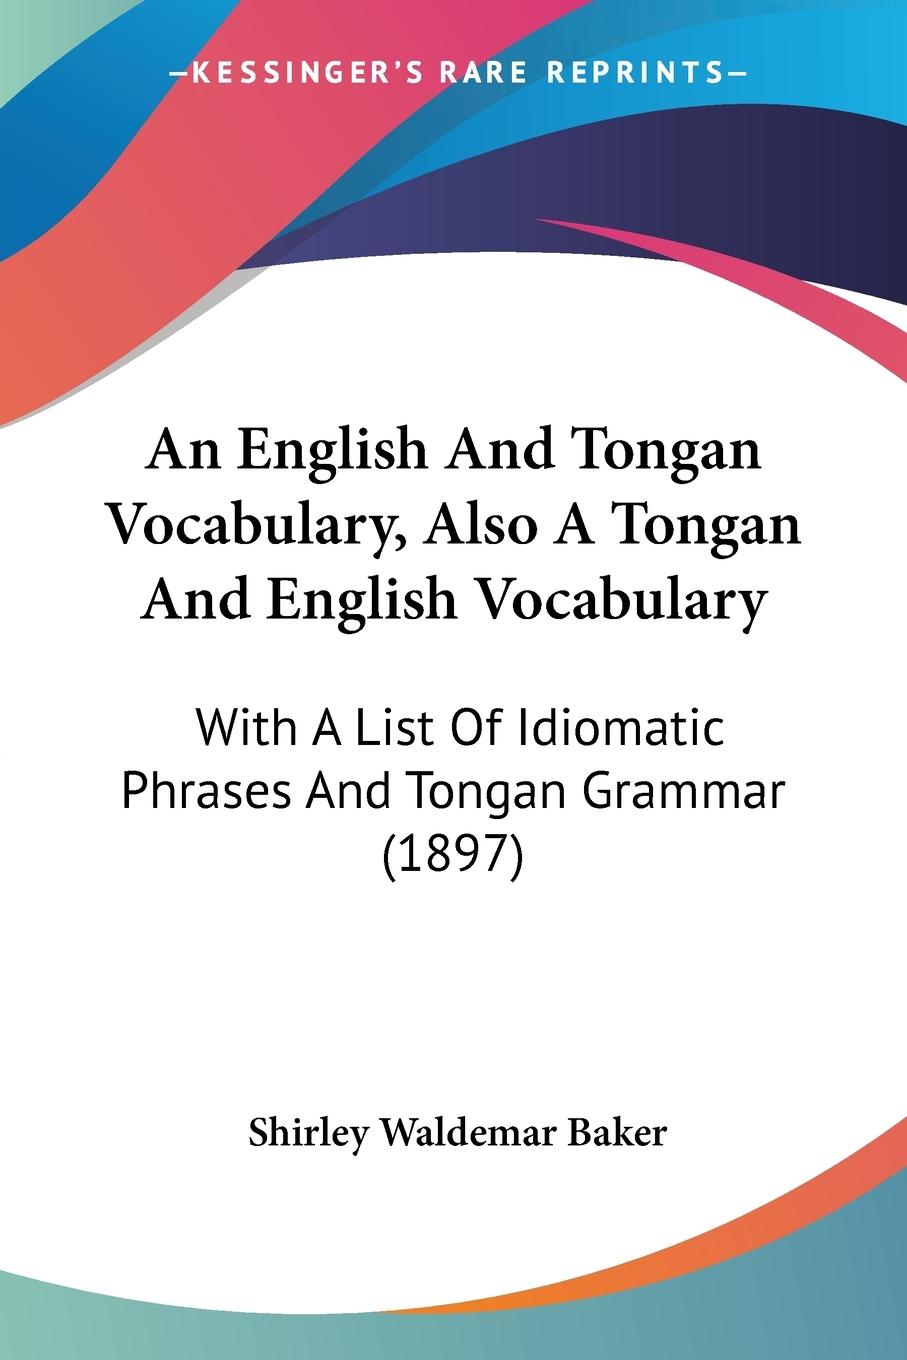 An English And Tongan Vocabulary, Also A Tongan And English Vocabulary - Baker, Shirley Waldemar